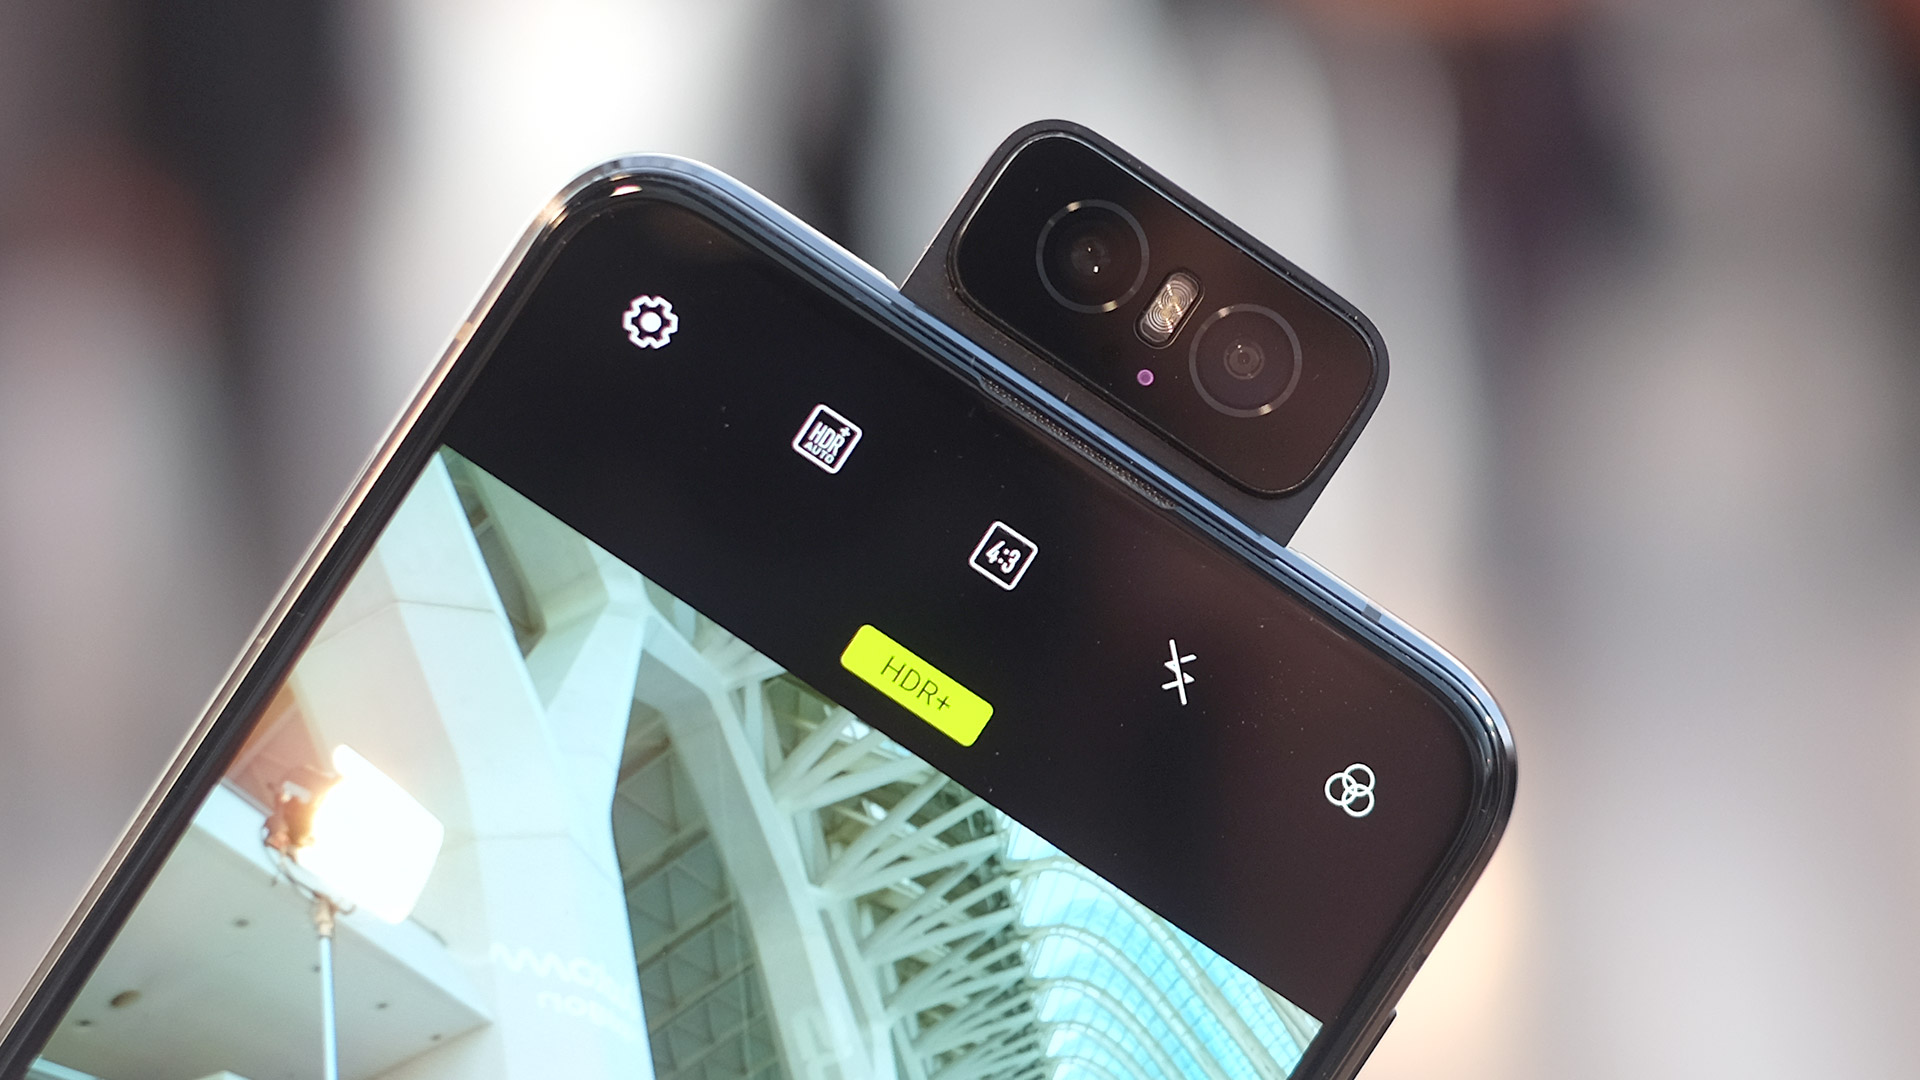 المقارنة الكاملة بين هاتفي الكاميرا الدوارة Asus Zenfone 6 وهاتف Samsung galaxy A80